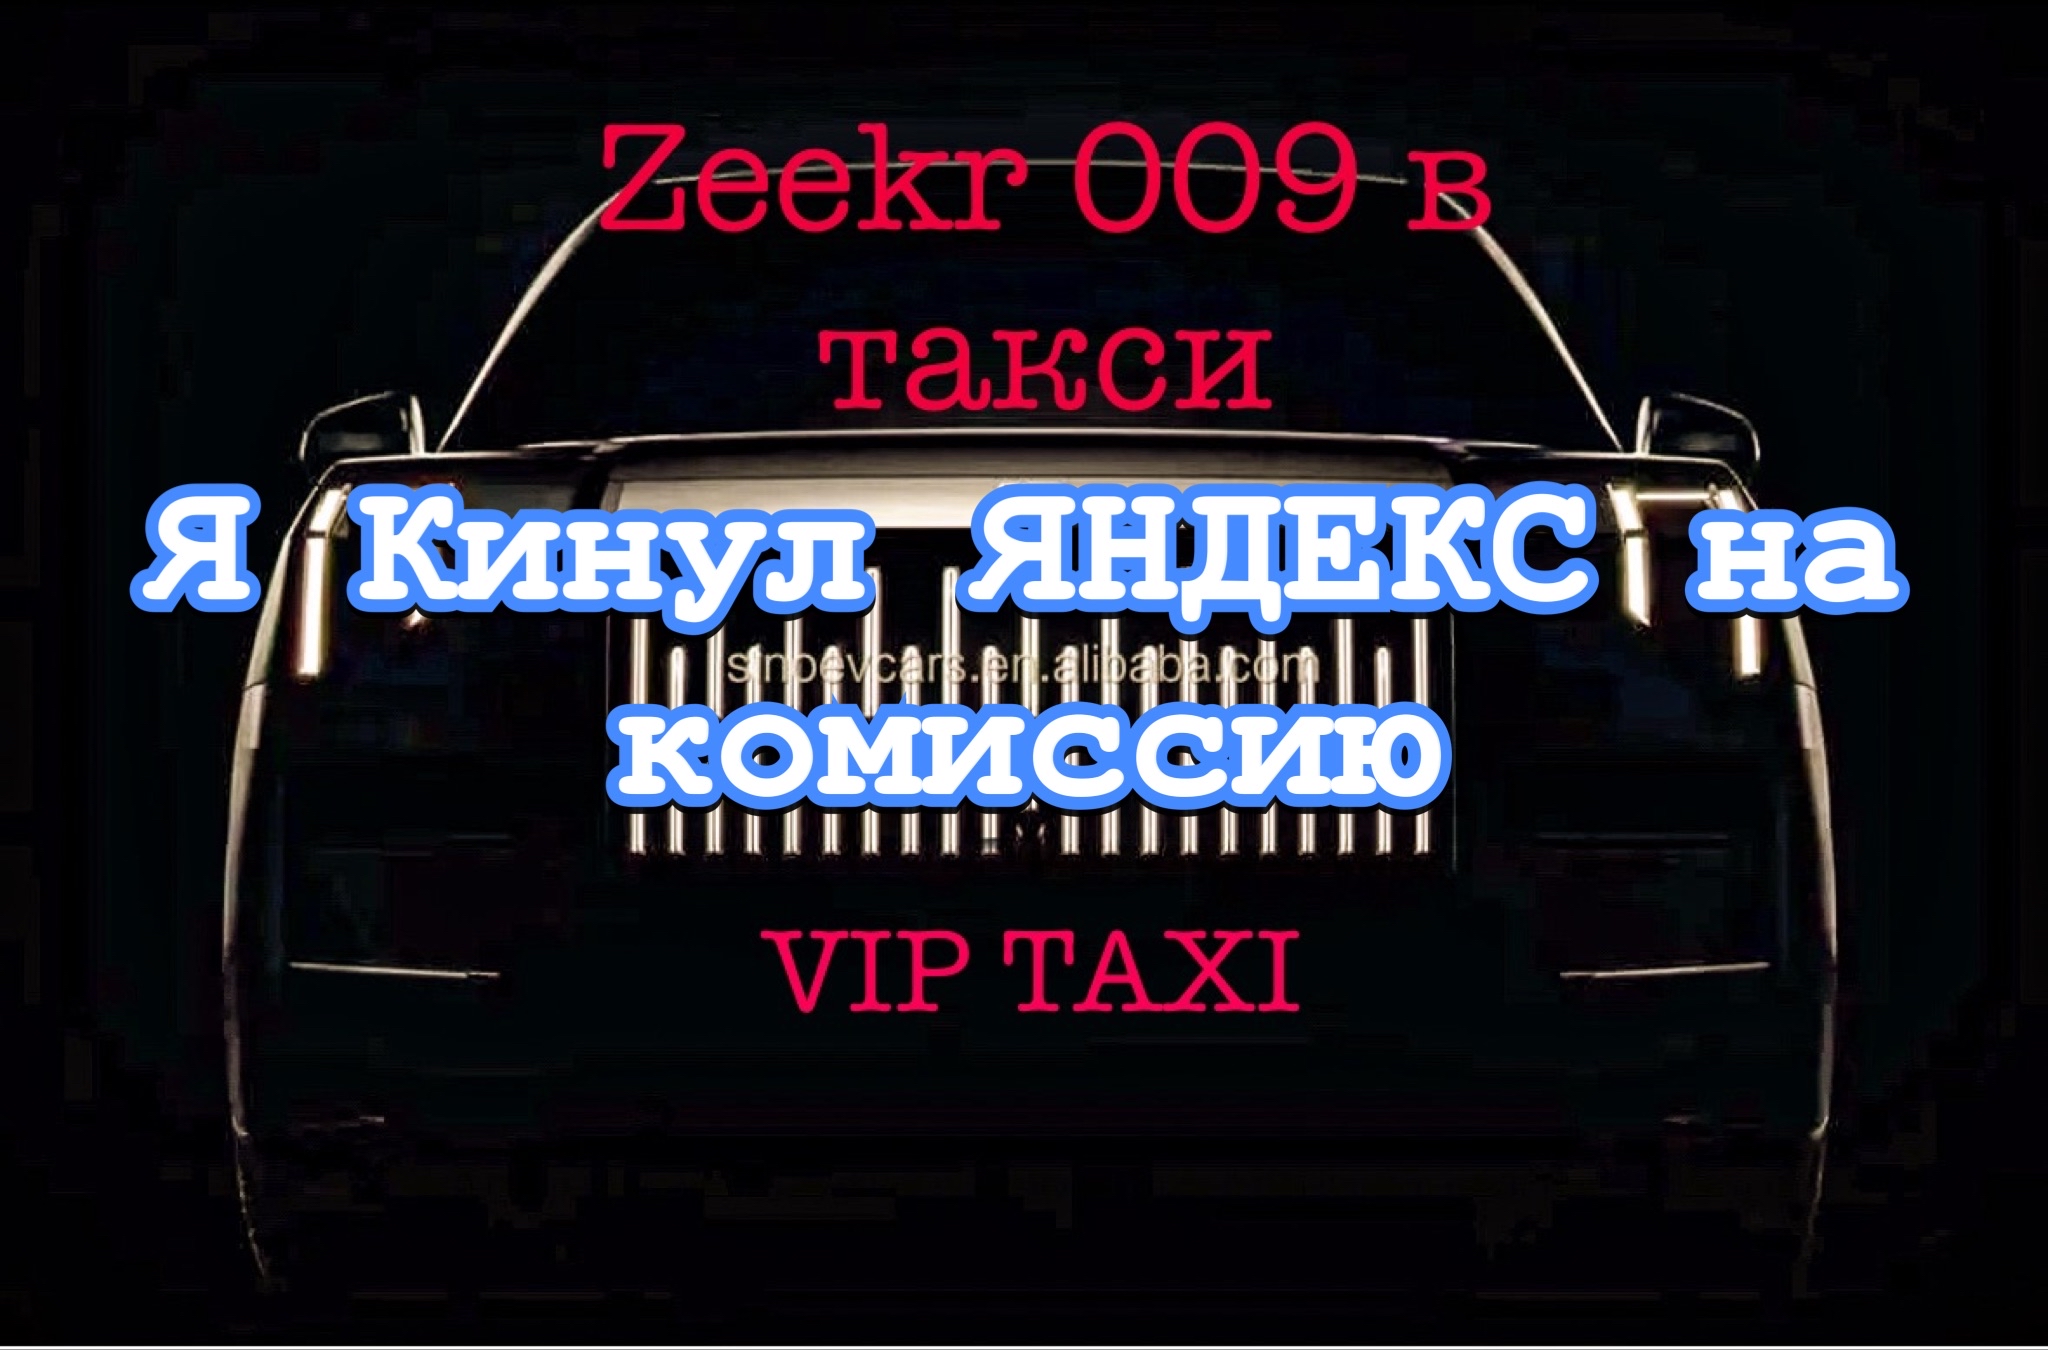 Суббота в vip taxi /таксую на zeekr009/elite taxi/тариф элит/рабочая смена